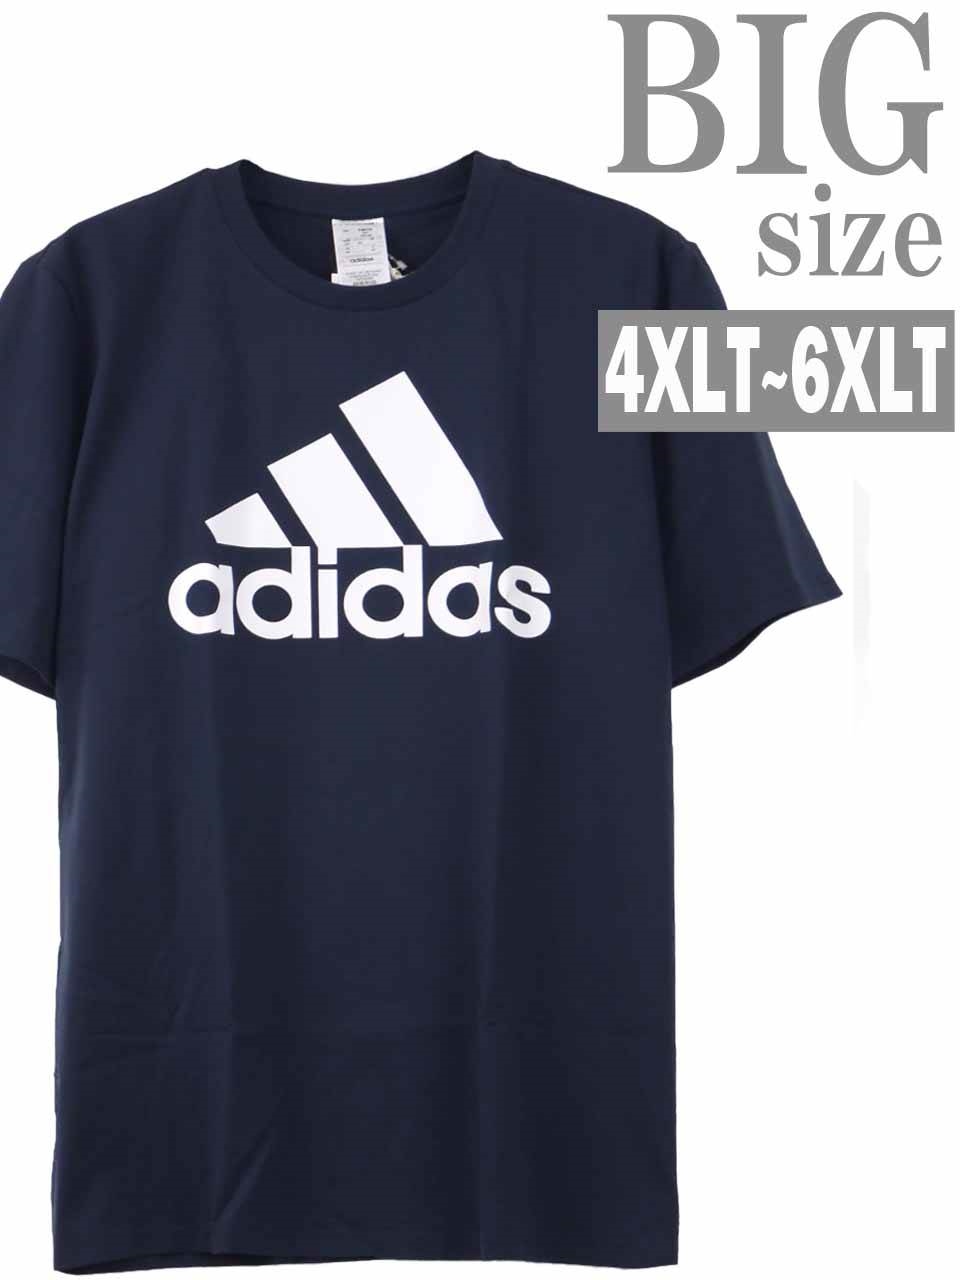 Tシャツ 大きいサイズ メンズ ロンT ロング丈 ロゴプリント adidas M ESS BL キン...